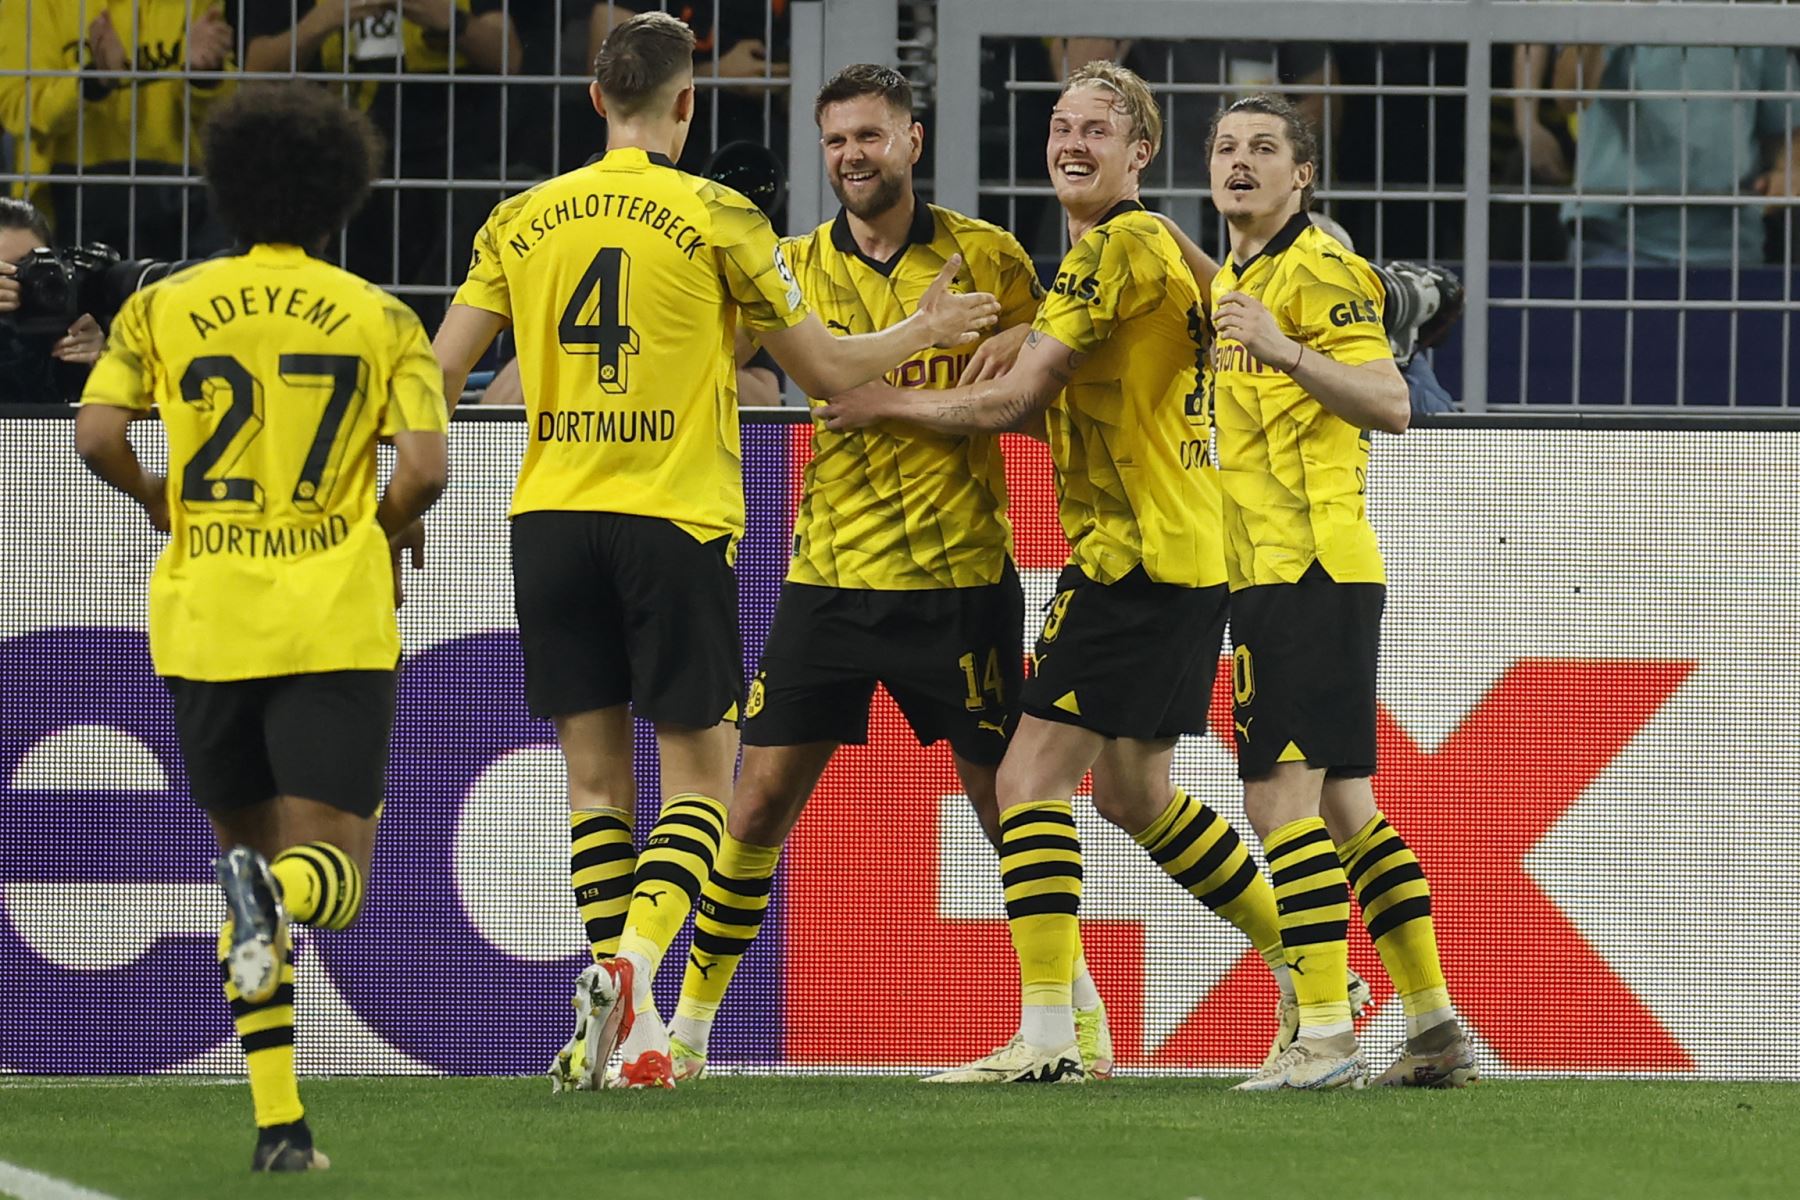 El delantero alemán del Dortmund, Niclas Fuellkrug (C), celebra con sus compañeros el gol inicial durante el partido de fútbol de ida de la semifinal de la Liga de Campeones de la UEFA entre el Borussia Dortmund y el Paris Saint-Germain

Foto: AFP